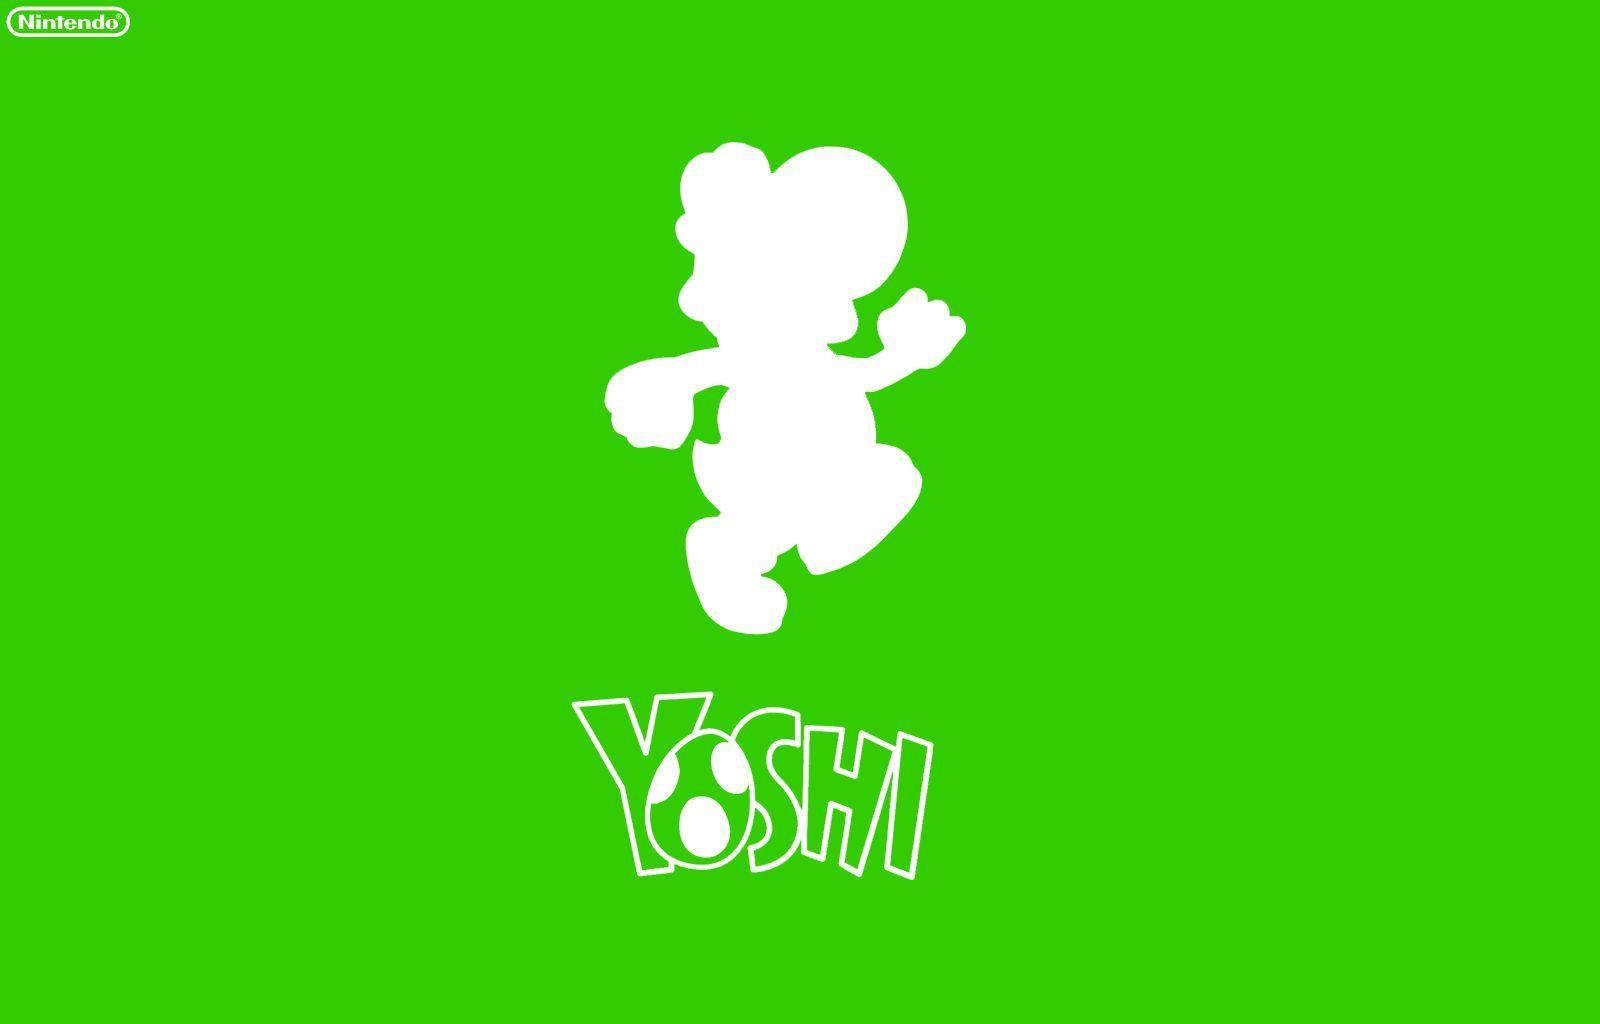 Nintendo Yoshi Wallpaper Green